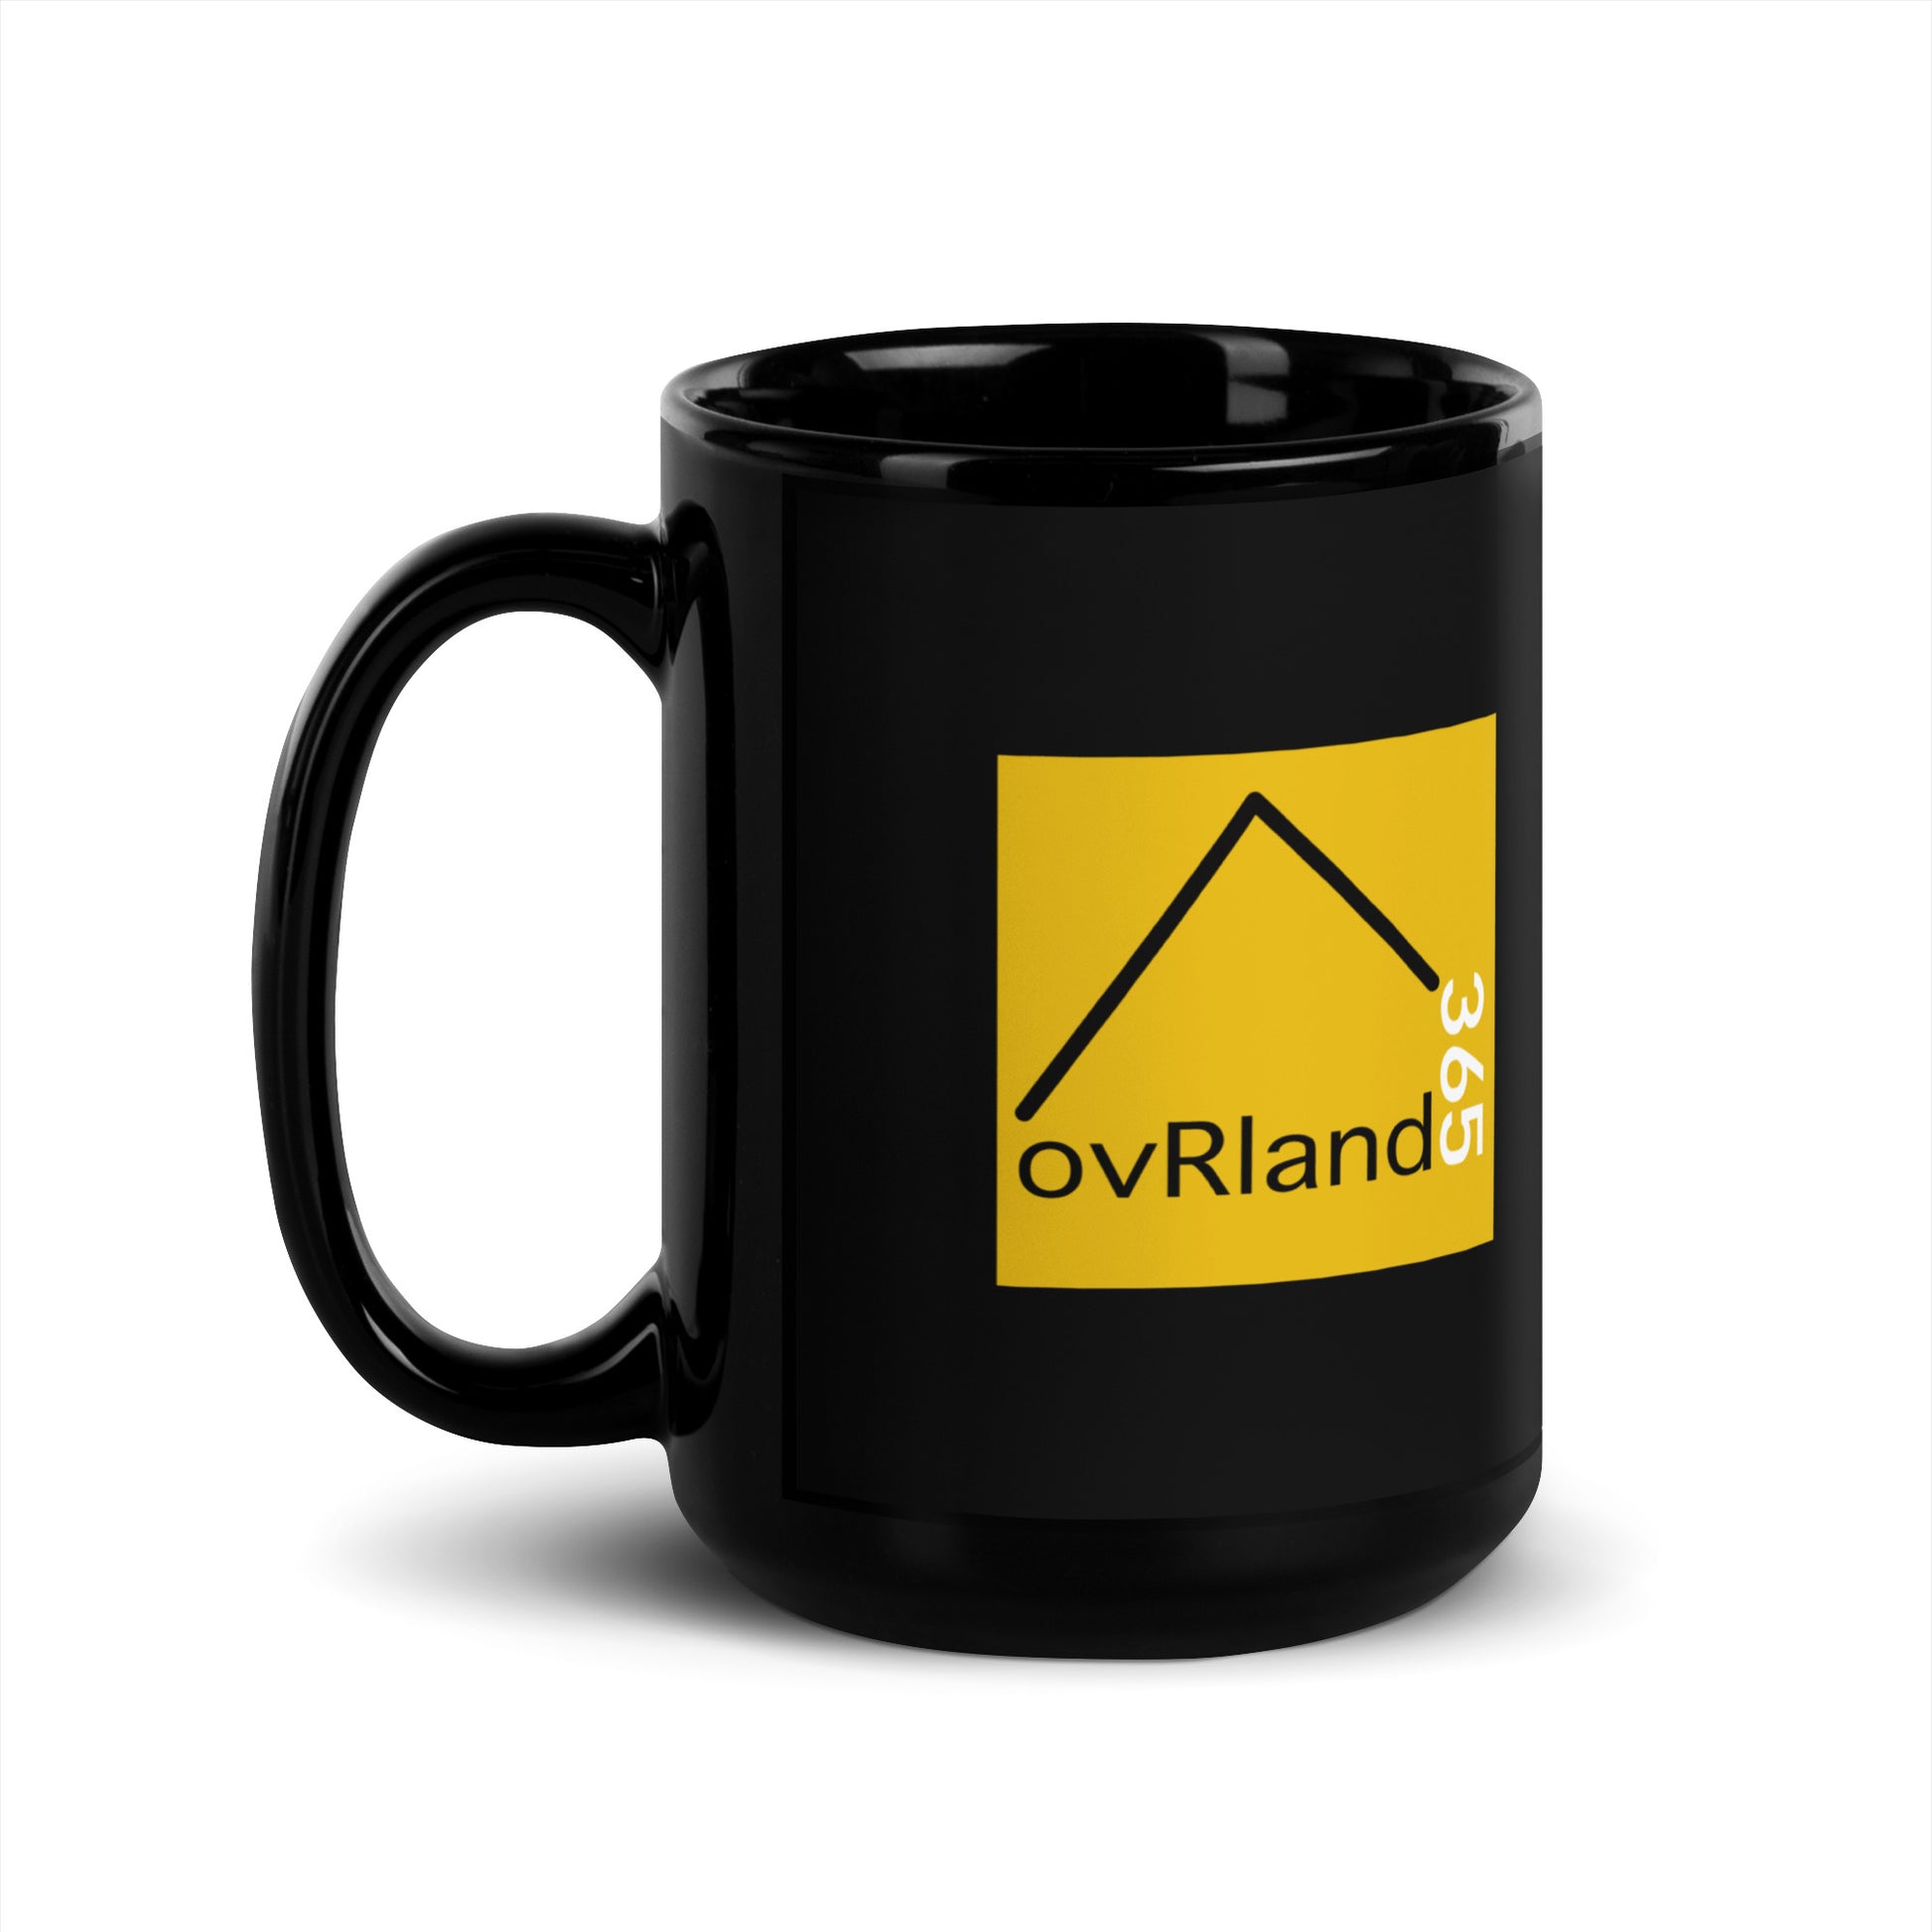 Life's a bitch. So go overlanding. Black 15oz coffee mug. back view. overland365.com